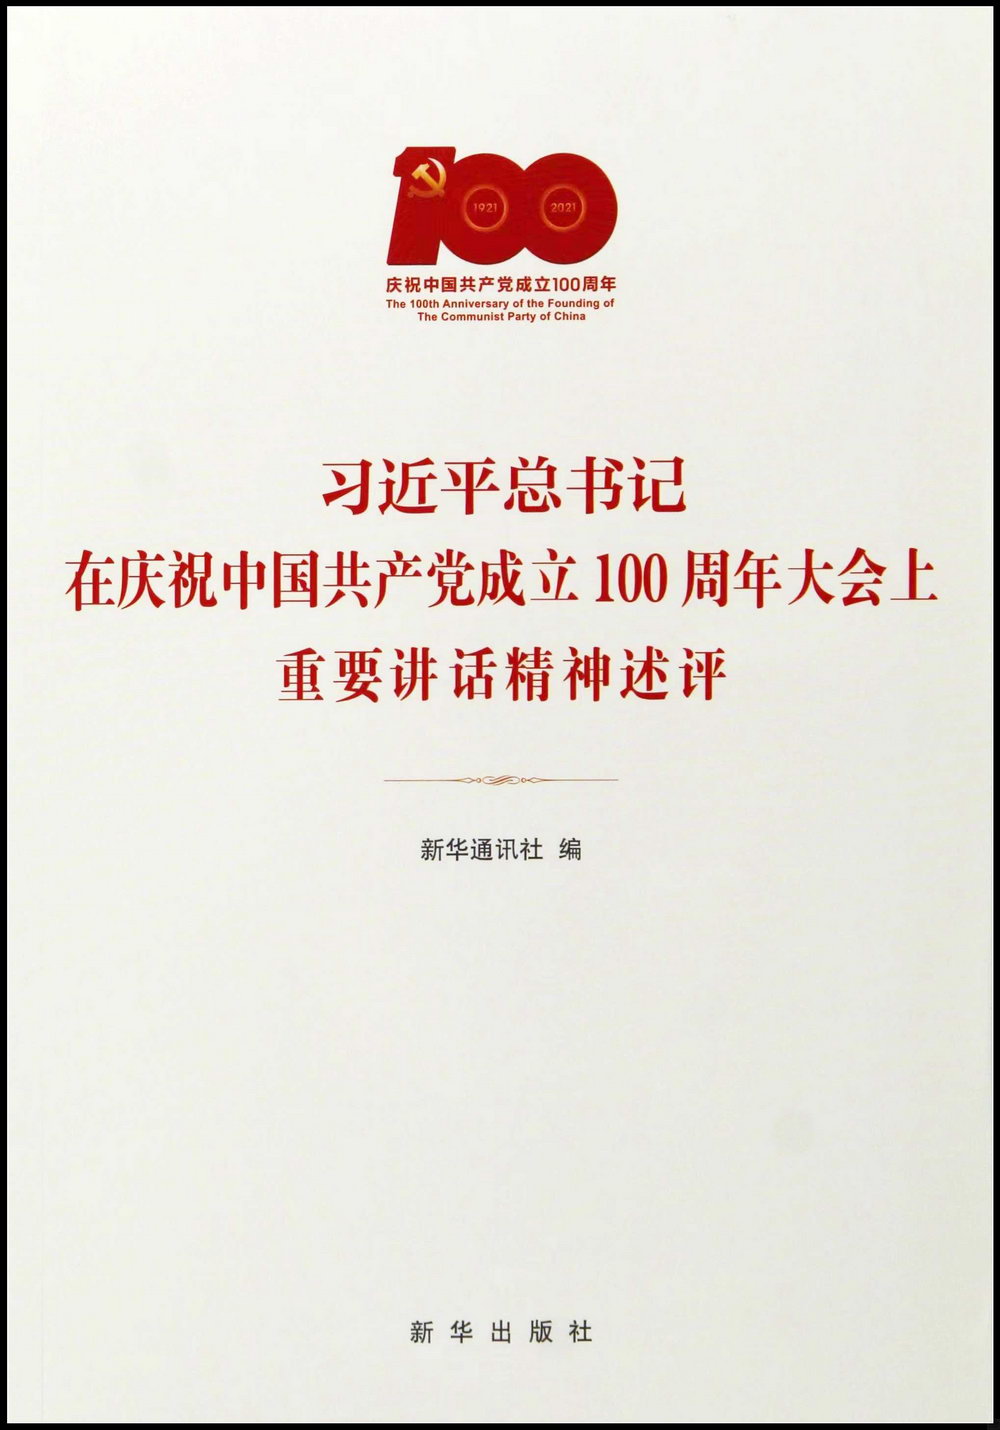 習近平總書記在慶祝中國共產黨成立100周年大會上重要講話精神述評